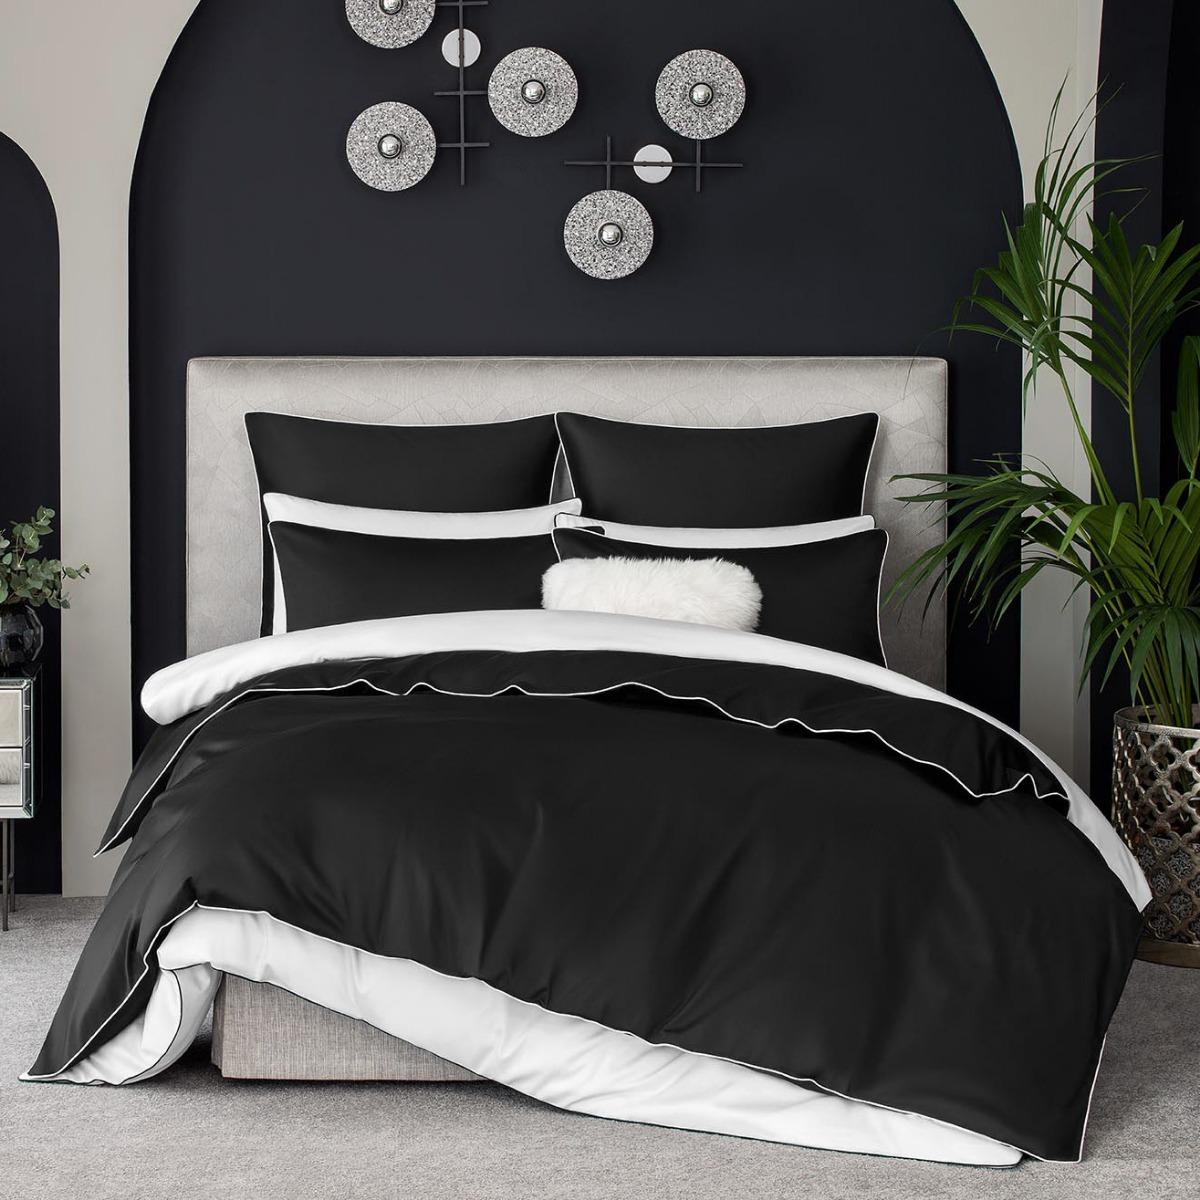 Комплект постельного белья Togas Клэрити чёрный с белым Кинг сайз держатель для шланга размер s на липучке чёрный